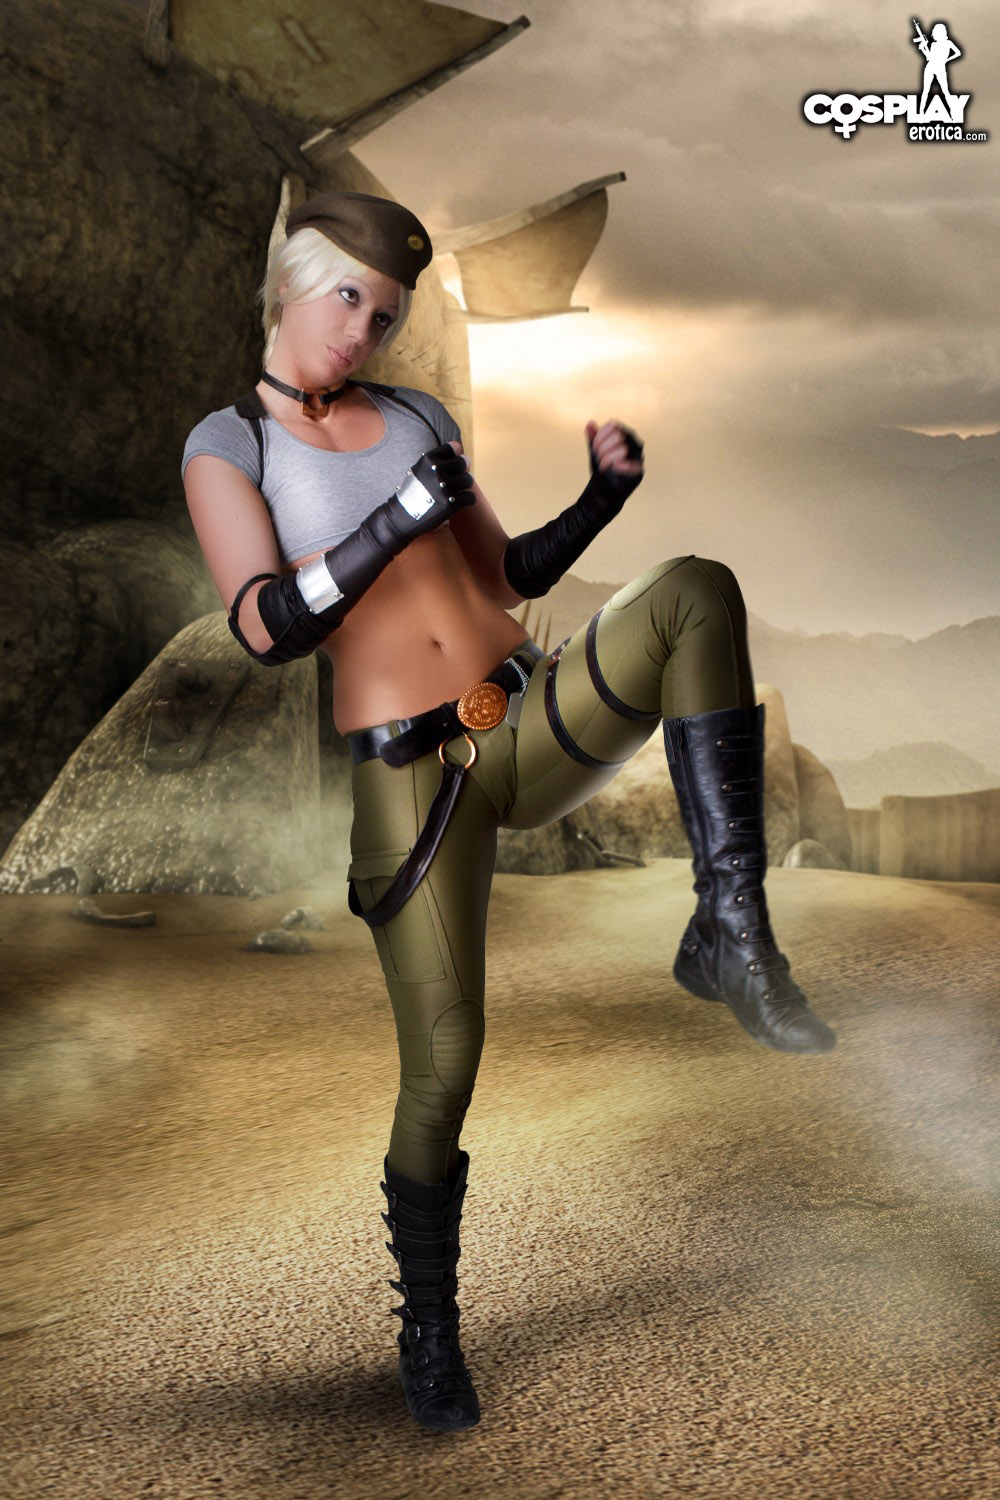 Sonya Blade Parody - Mortal kombat 9 sonya blade nude costume softcore scene